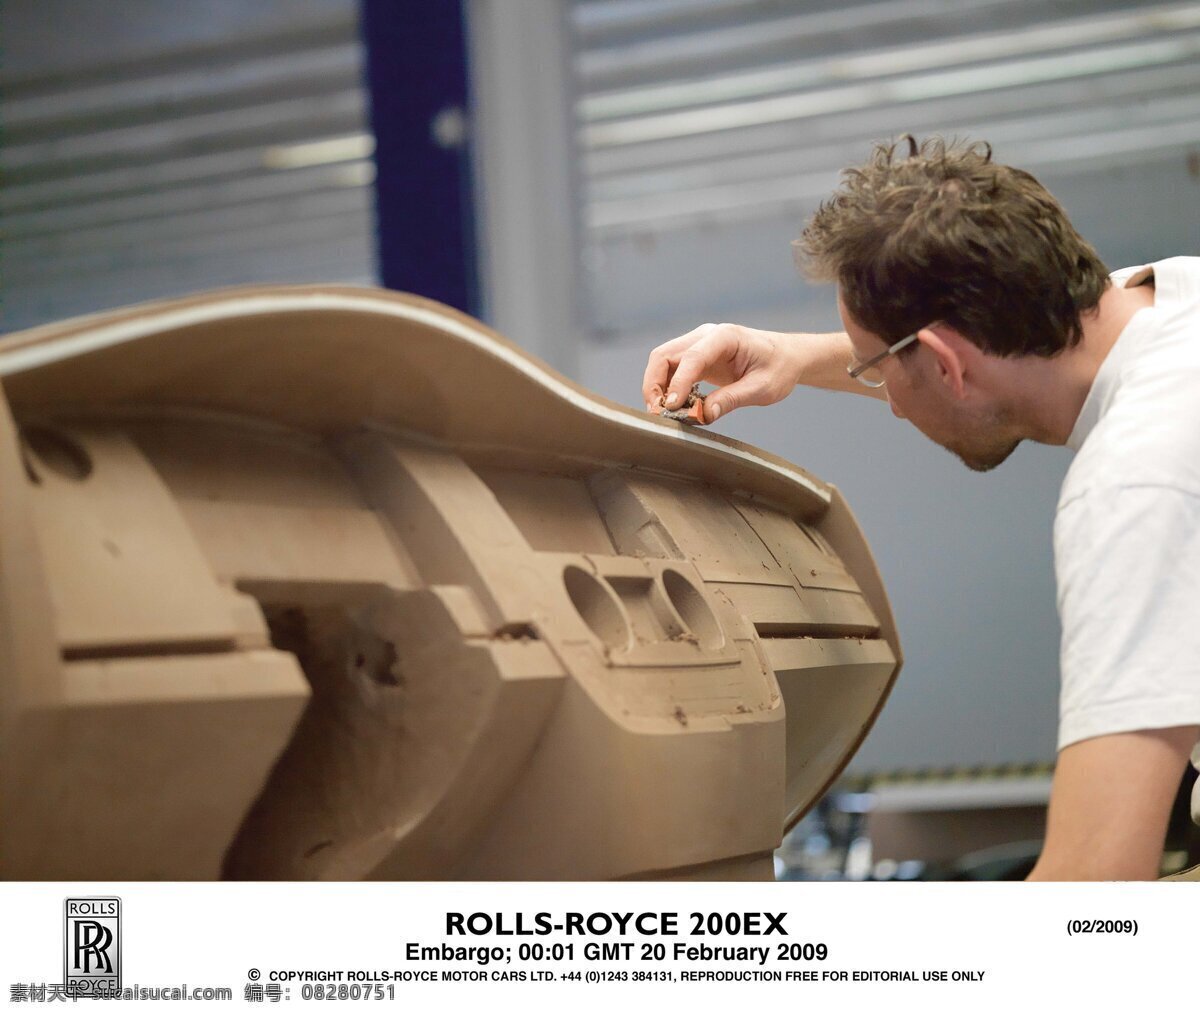 劳斯莱斯 生产线 rolls royce 宝马 公司 旗下 品牌 车间生产线 加工 模型模具 工业生产 现代科技